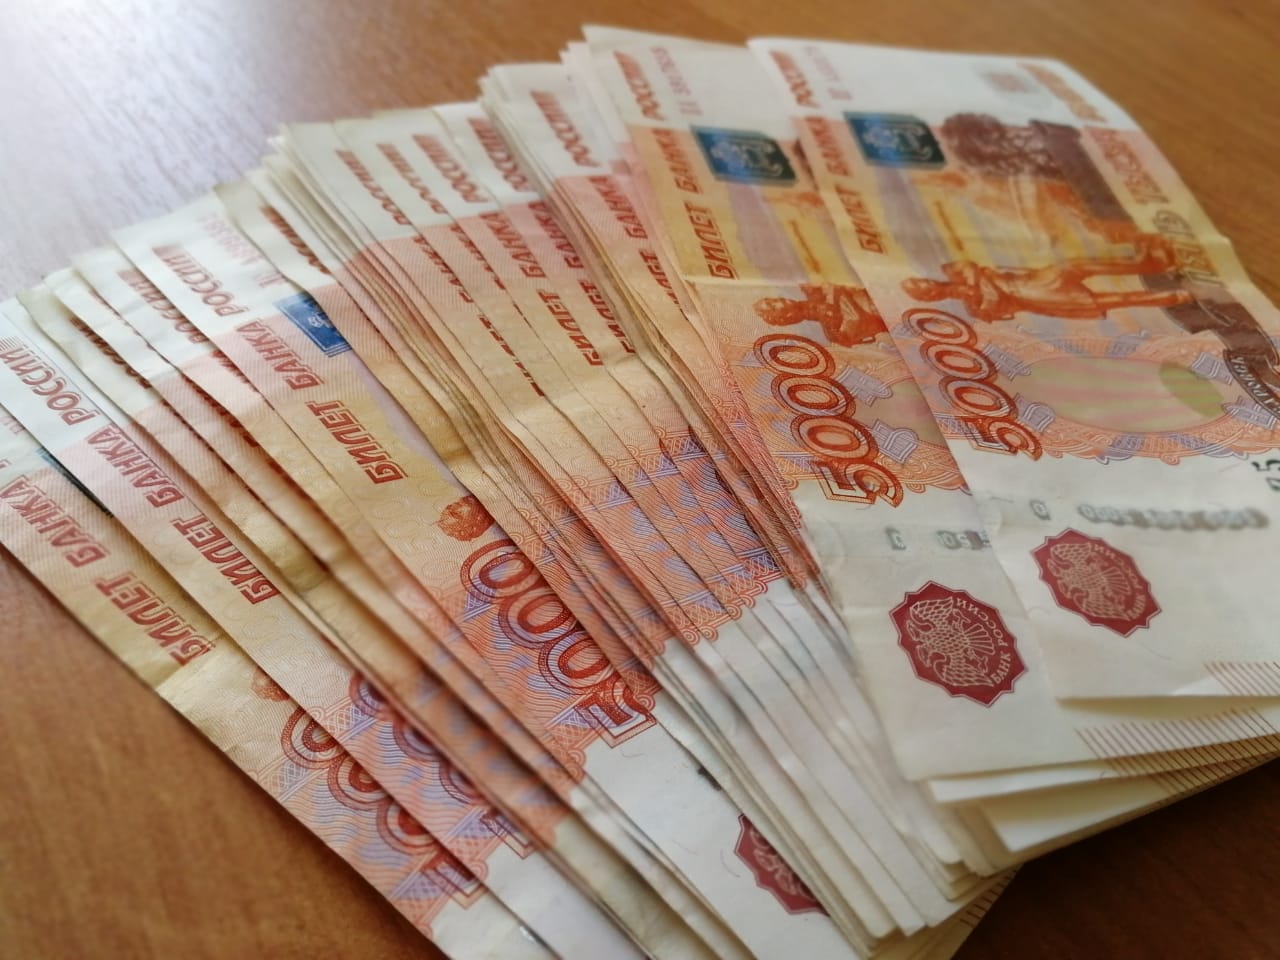 Мошенники путем обмана похитили 280 тысяч рублей у жительницы п. Николаевка ЕАО